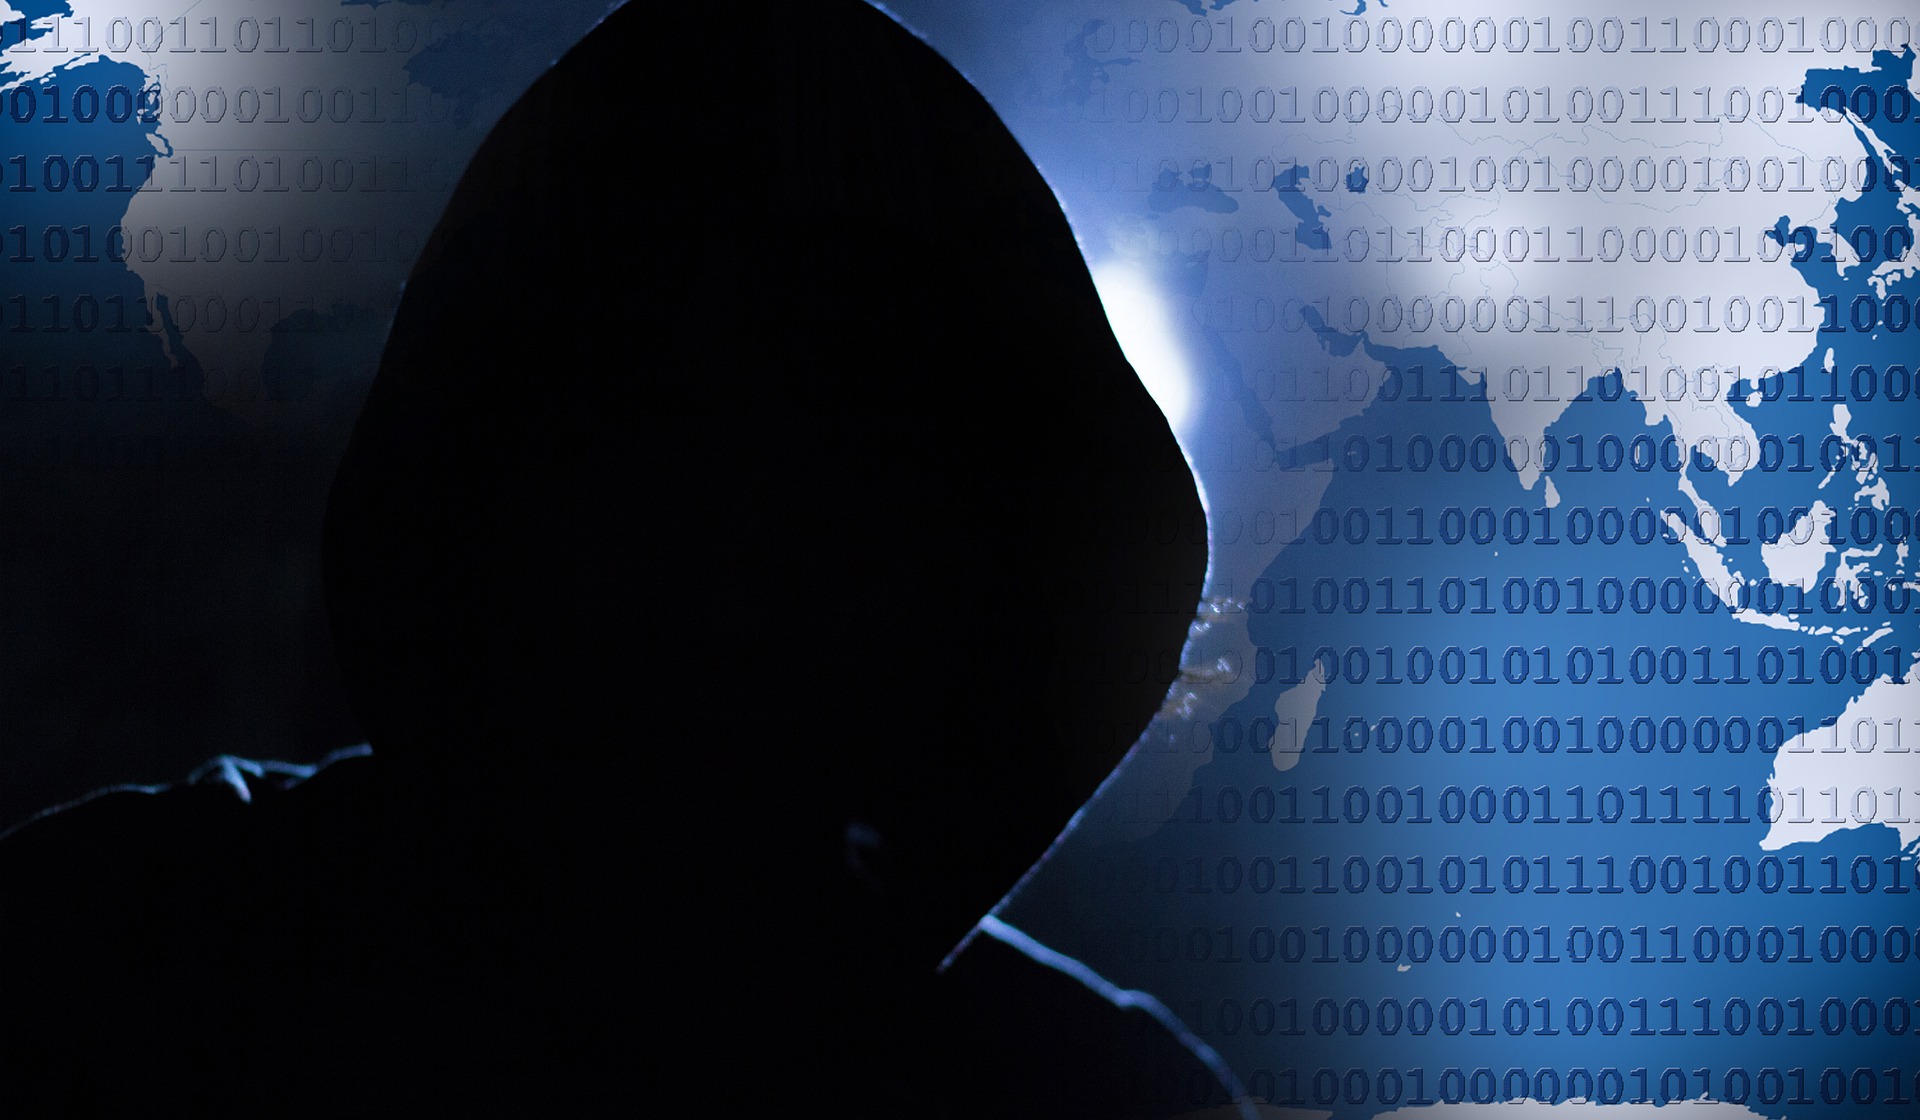 Comment un hacker peut-il pirater un compte Facebook ?